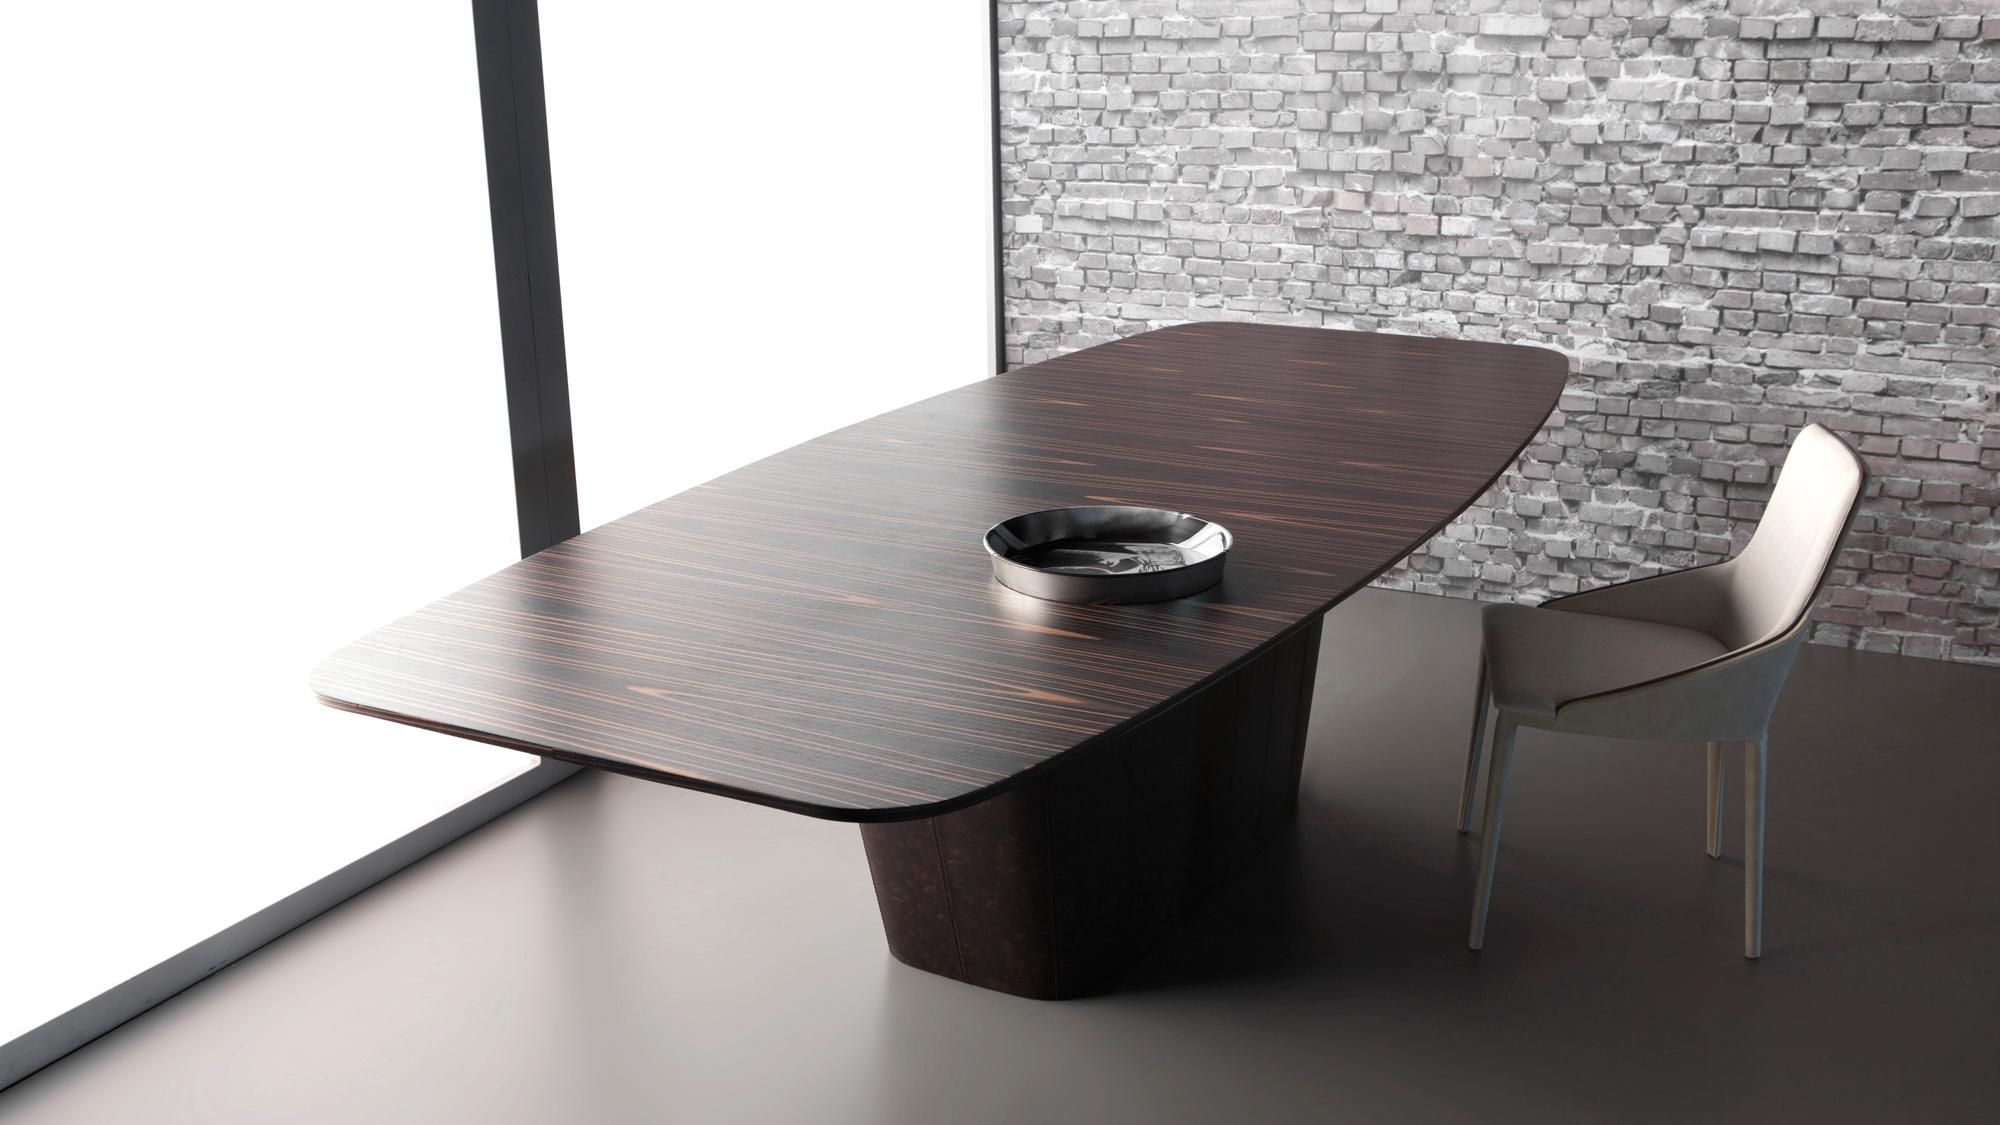 Prime Dining Table by Doimo Brasil
Dimensions : L 220 x D 120 x H 75 cm 
MATERIAL : Base : Cuir Nature, Dessus : Placage. 

Également disponible dans d'autres dimensions. Veuillez nous contacter.

Dans un souci de bon goût et de personnalité, Doimo